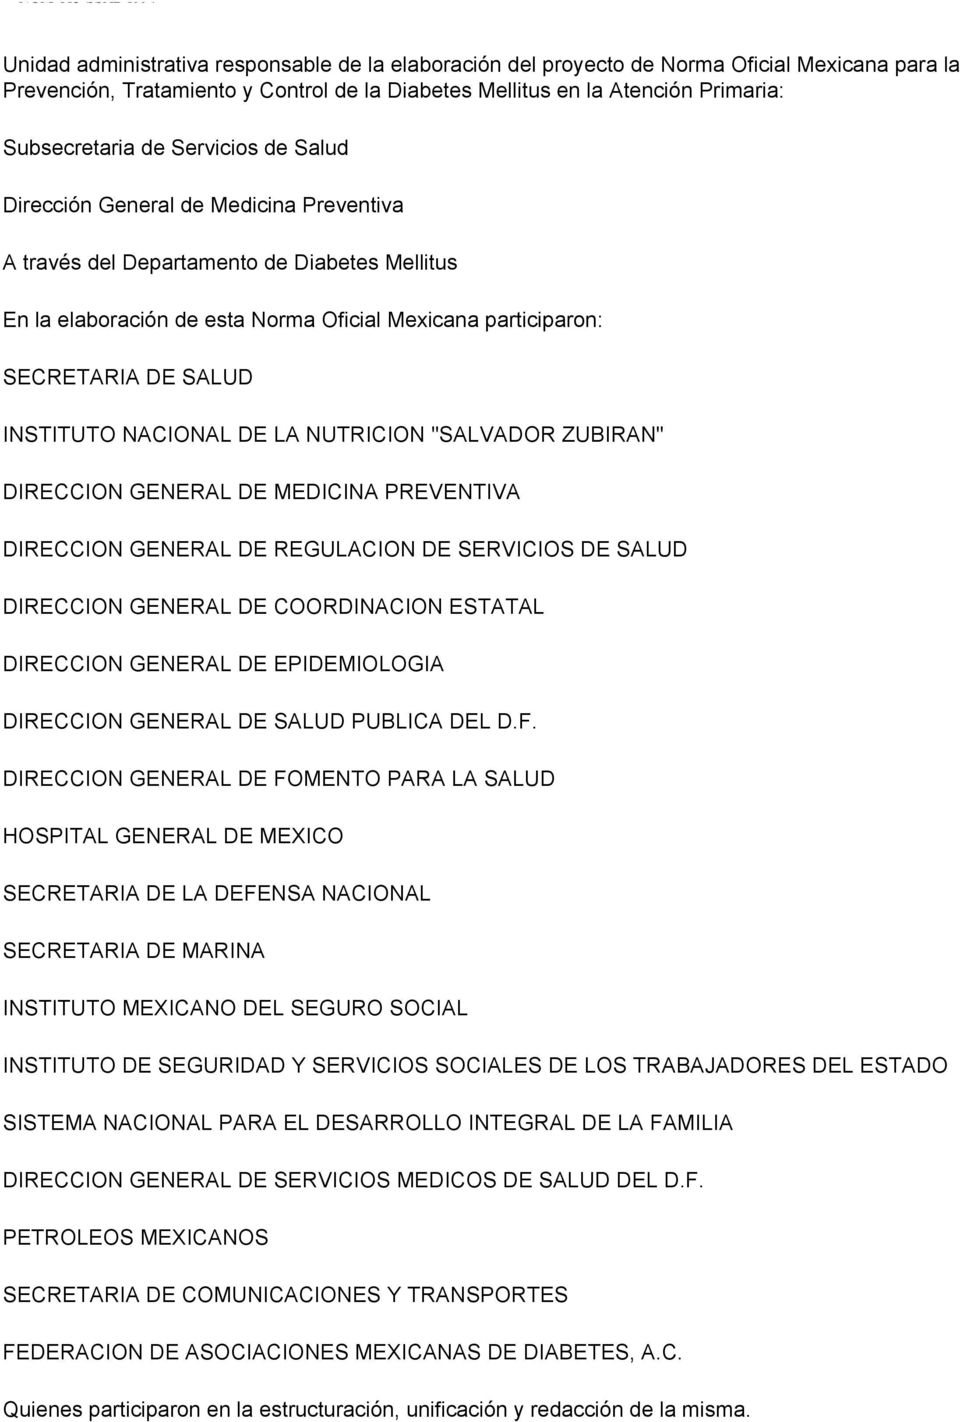 DE SALUD INSTITUTO NACIONAL DE LA NUTRICION "SALVADOR ZUBIRAN" DIRECCION GENERAL DE MEDICINA PREVENTIVA DIRECCION GENERAL DE REGULACION DE SERVICIOS DE SALUD DIRECCION GENERAL DE COORDINACION ESTATAL